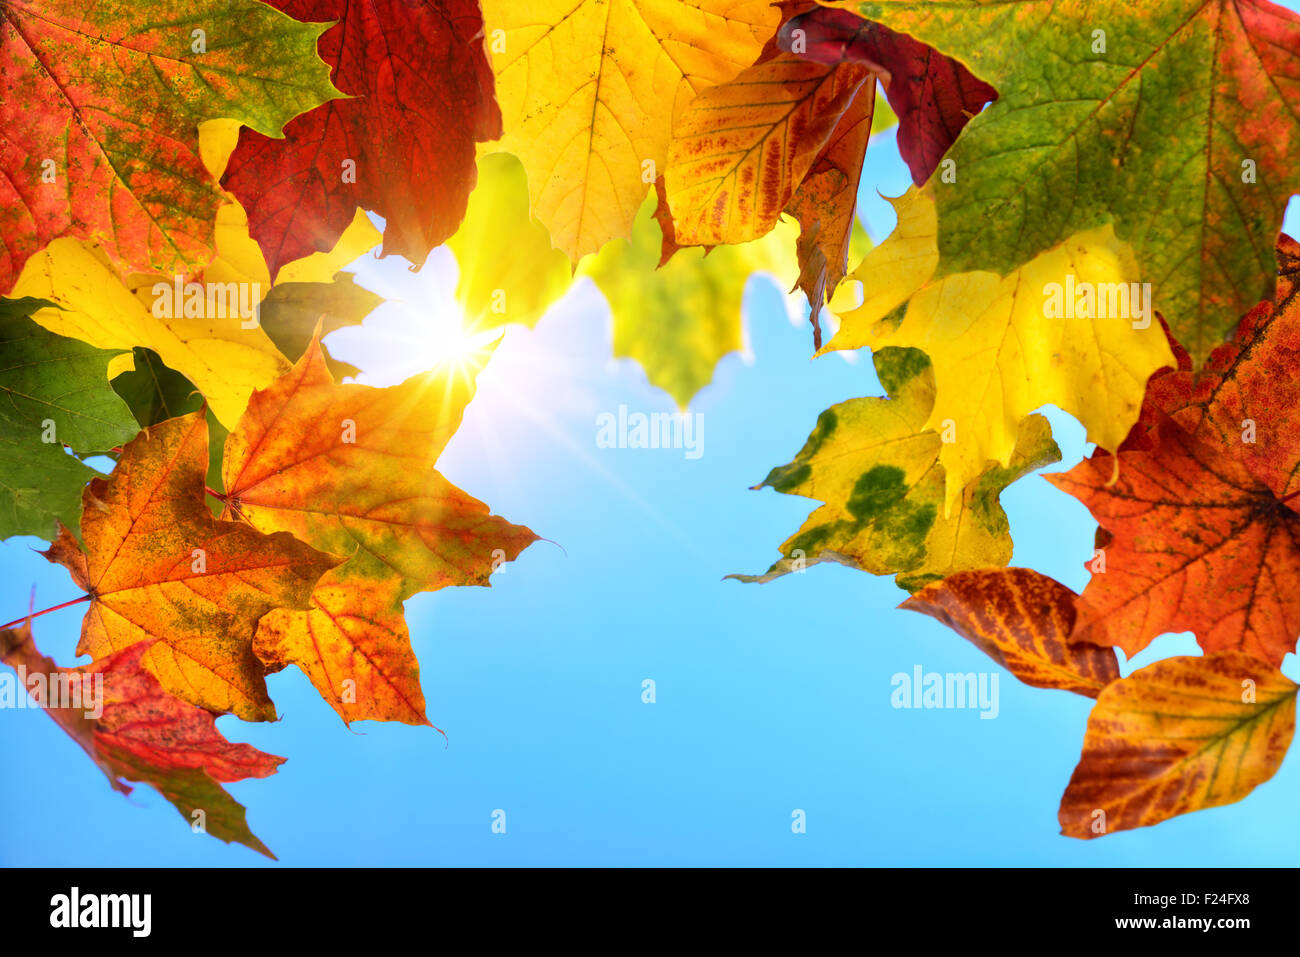 Hojas de otoño colorido en primer plano enmarcando el azul claro del cielo y el sol en el fondo Foto de stock